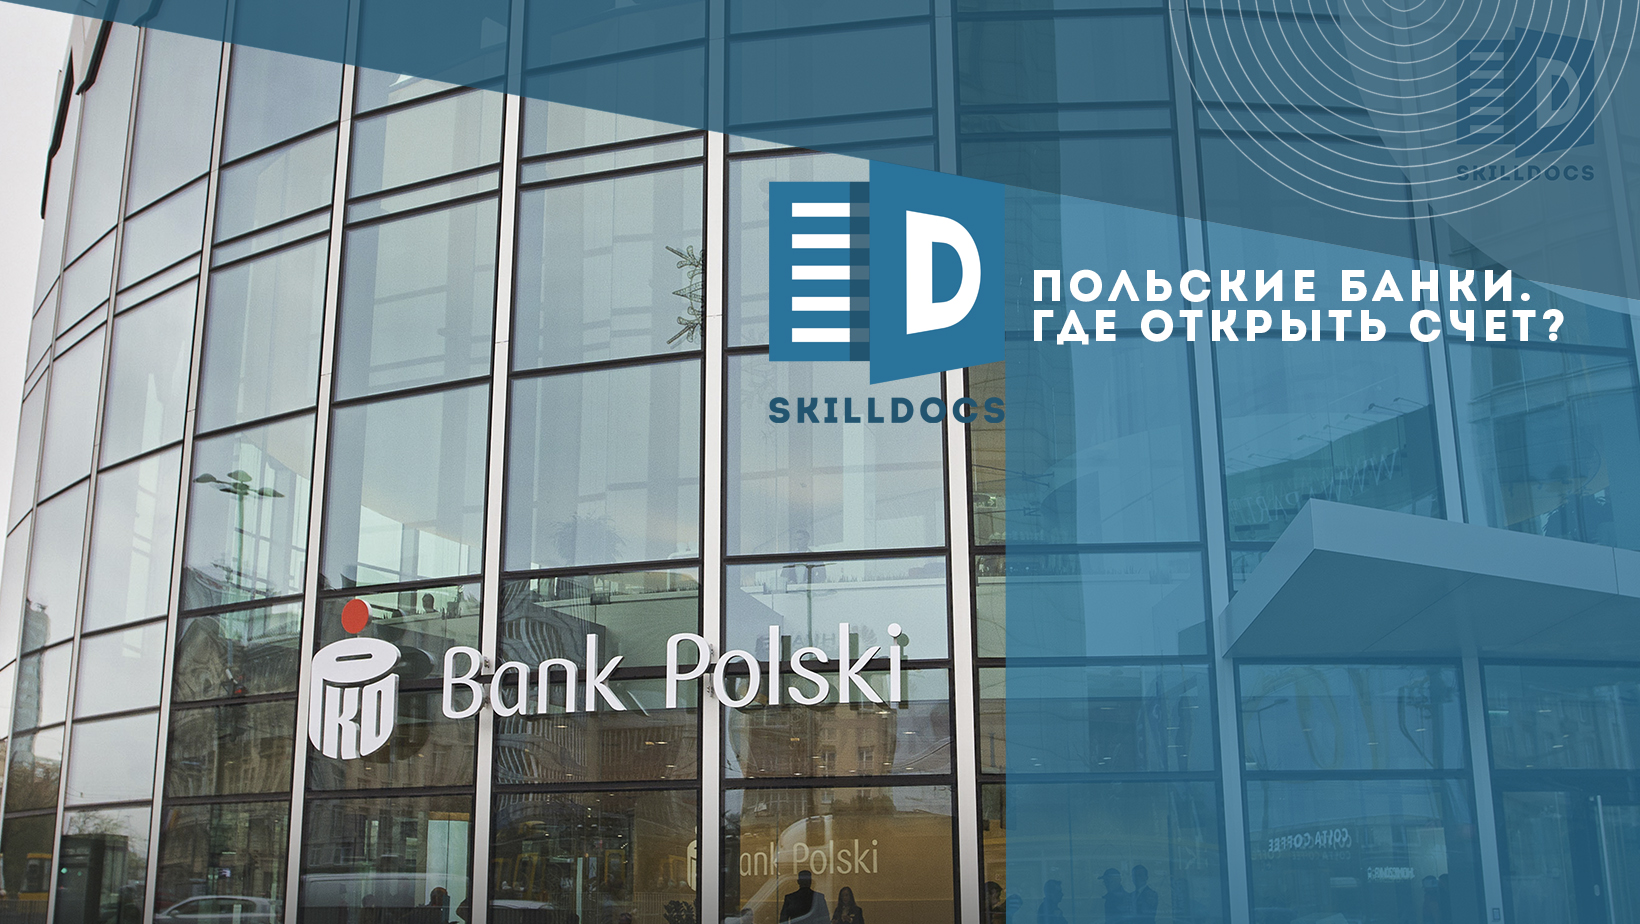 polskie-banki-site